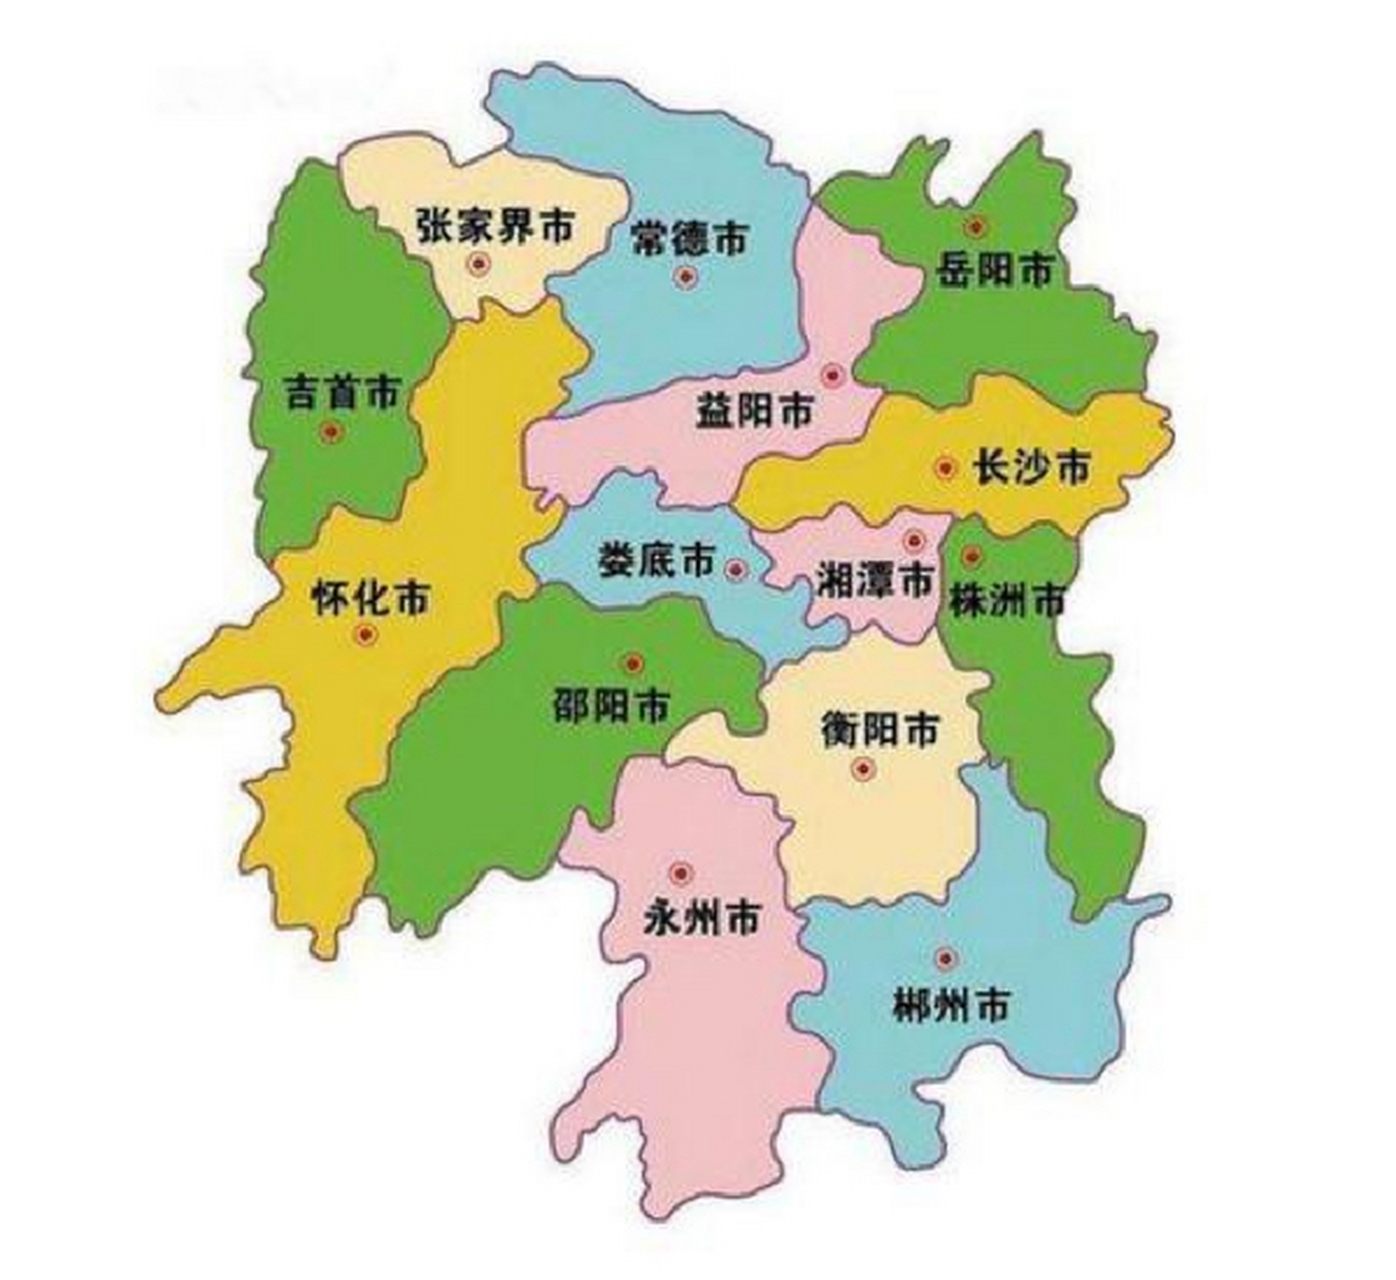 湖南省78 总介:湖南共有13个地级市,1个自治州(湘西土家族苗族自治